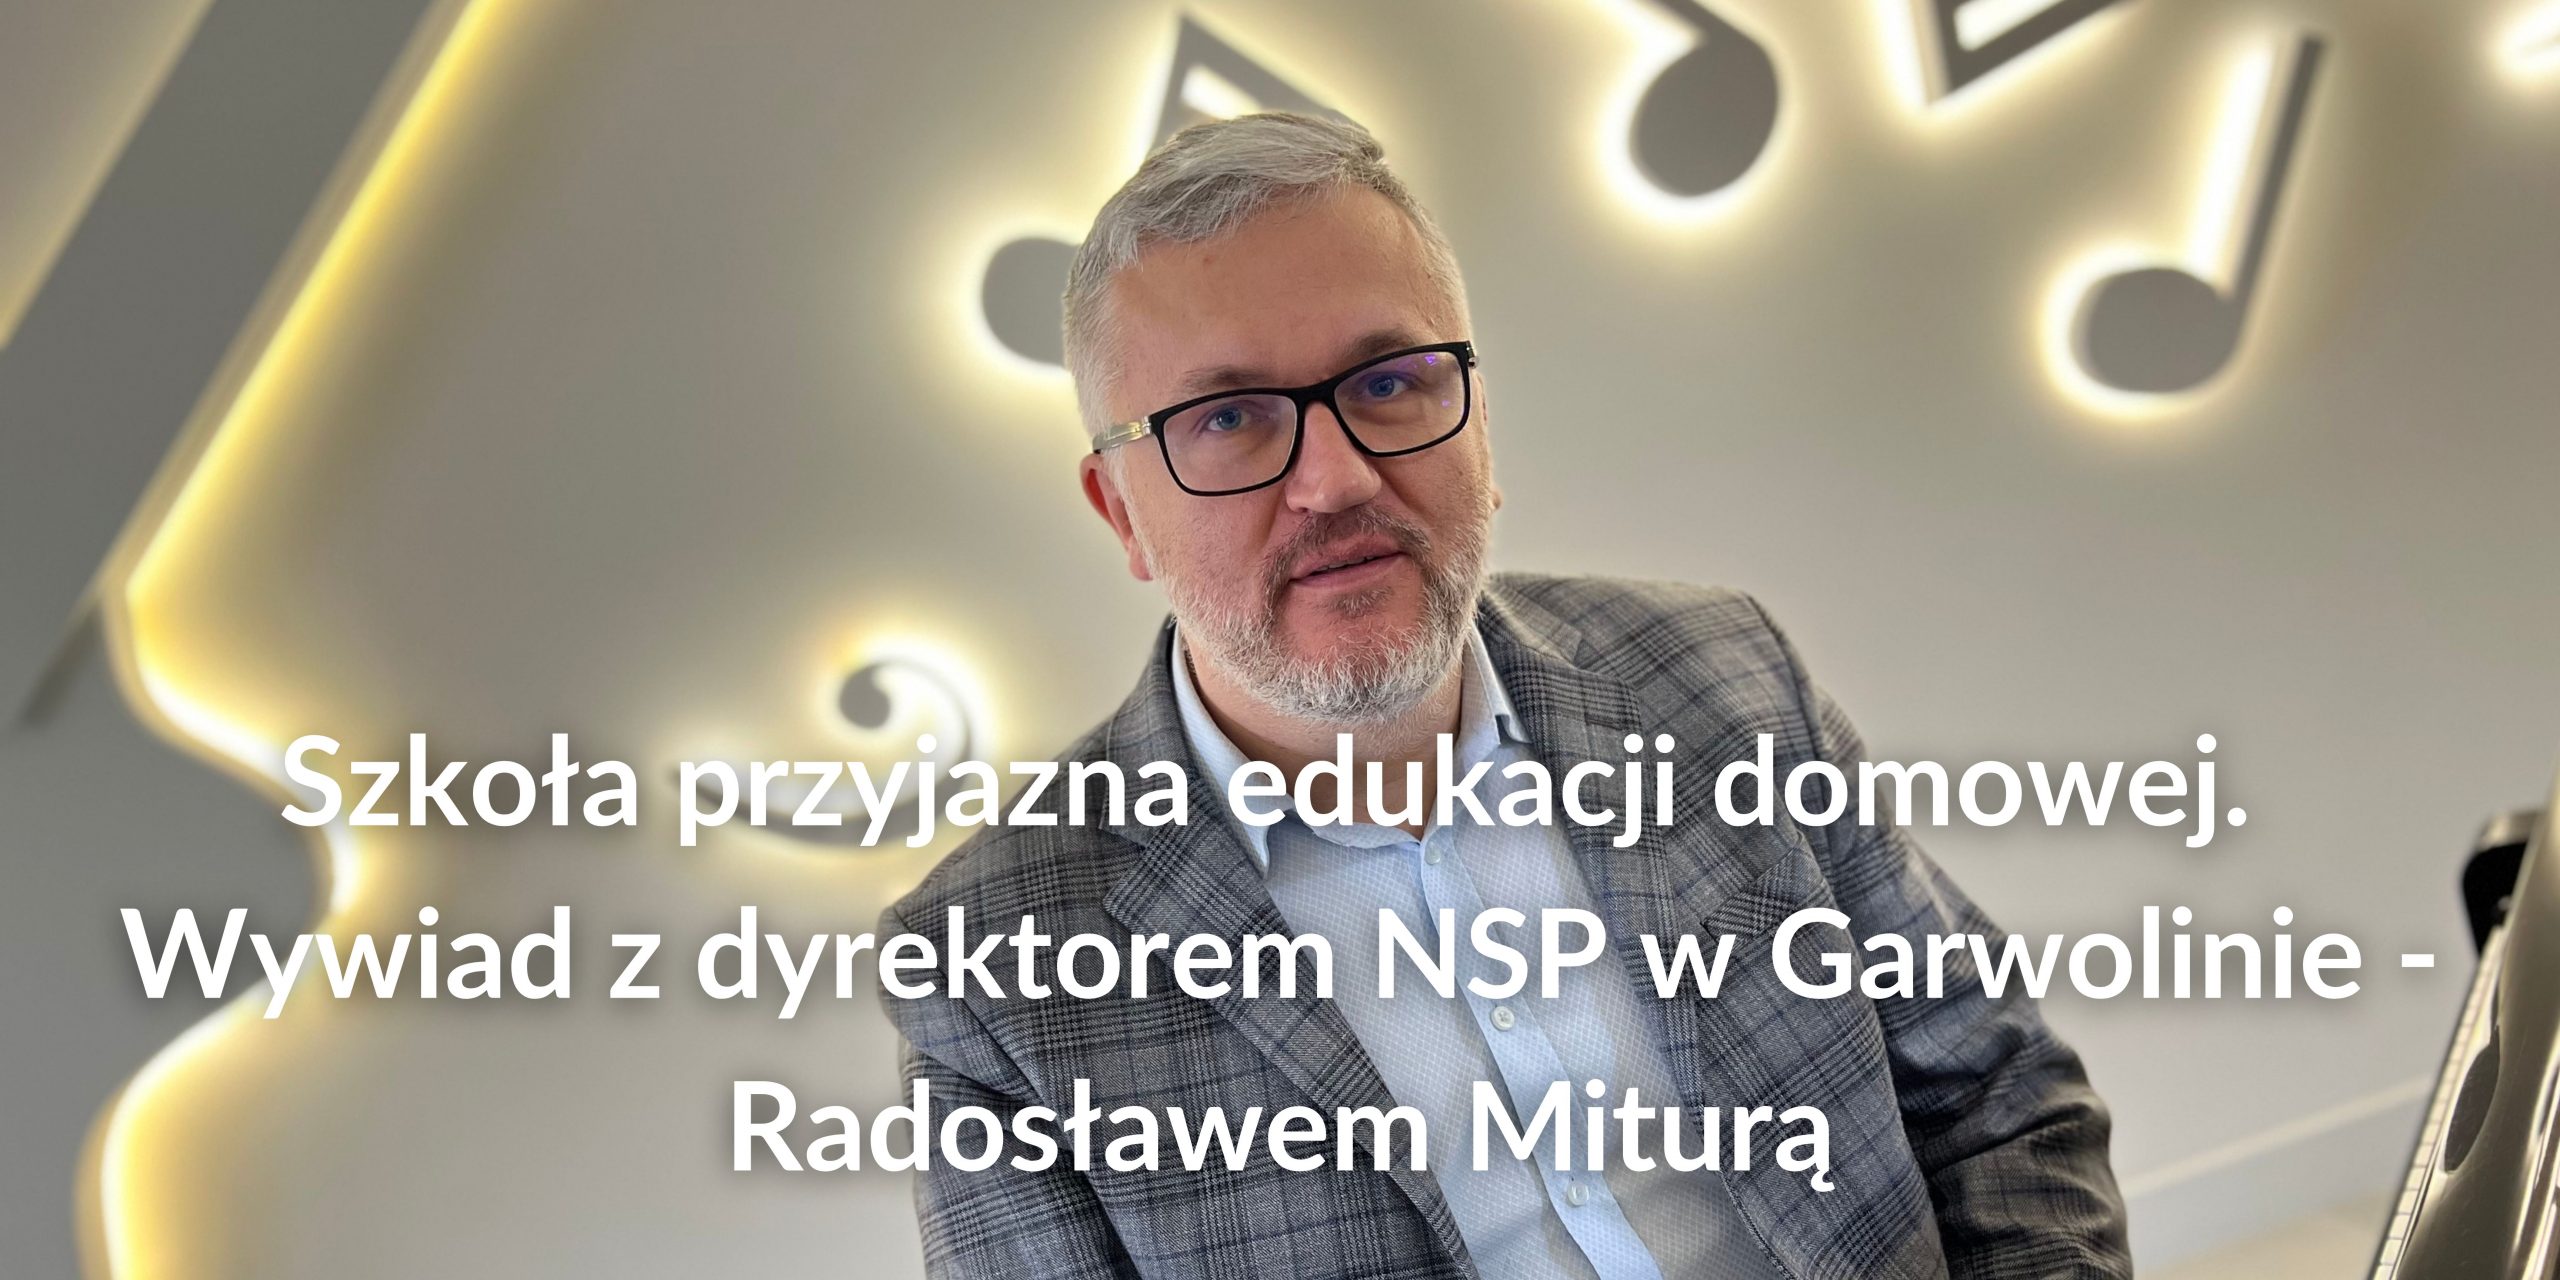 Szkoła przyjazna edukacji domowej. Wywiad z dyrektorem NSP w Garwolinie – Radosławem Miturą